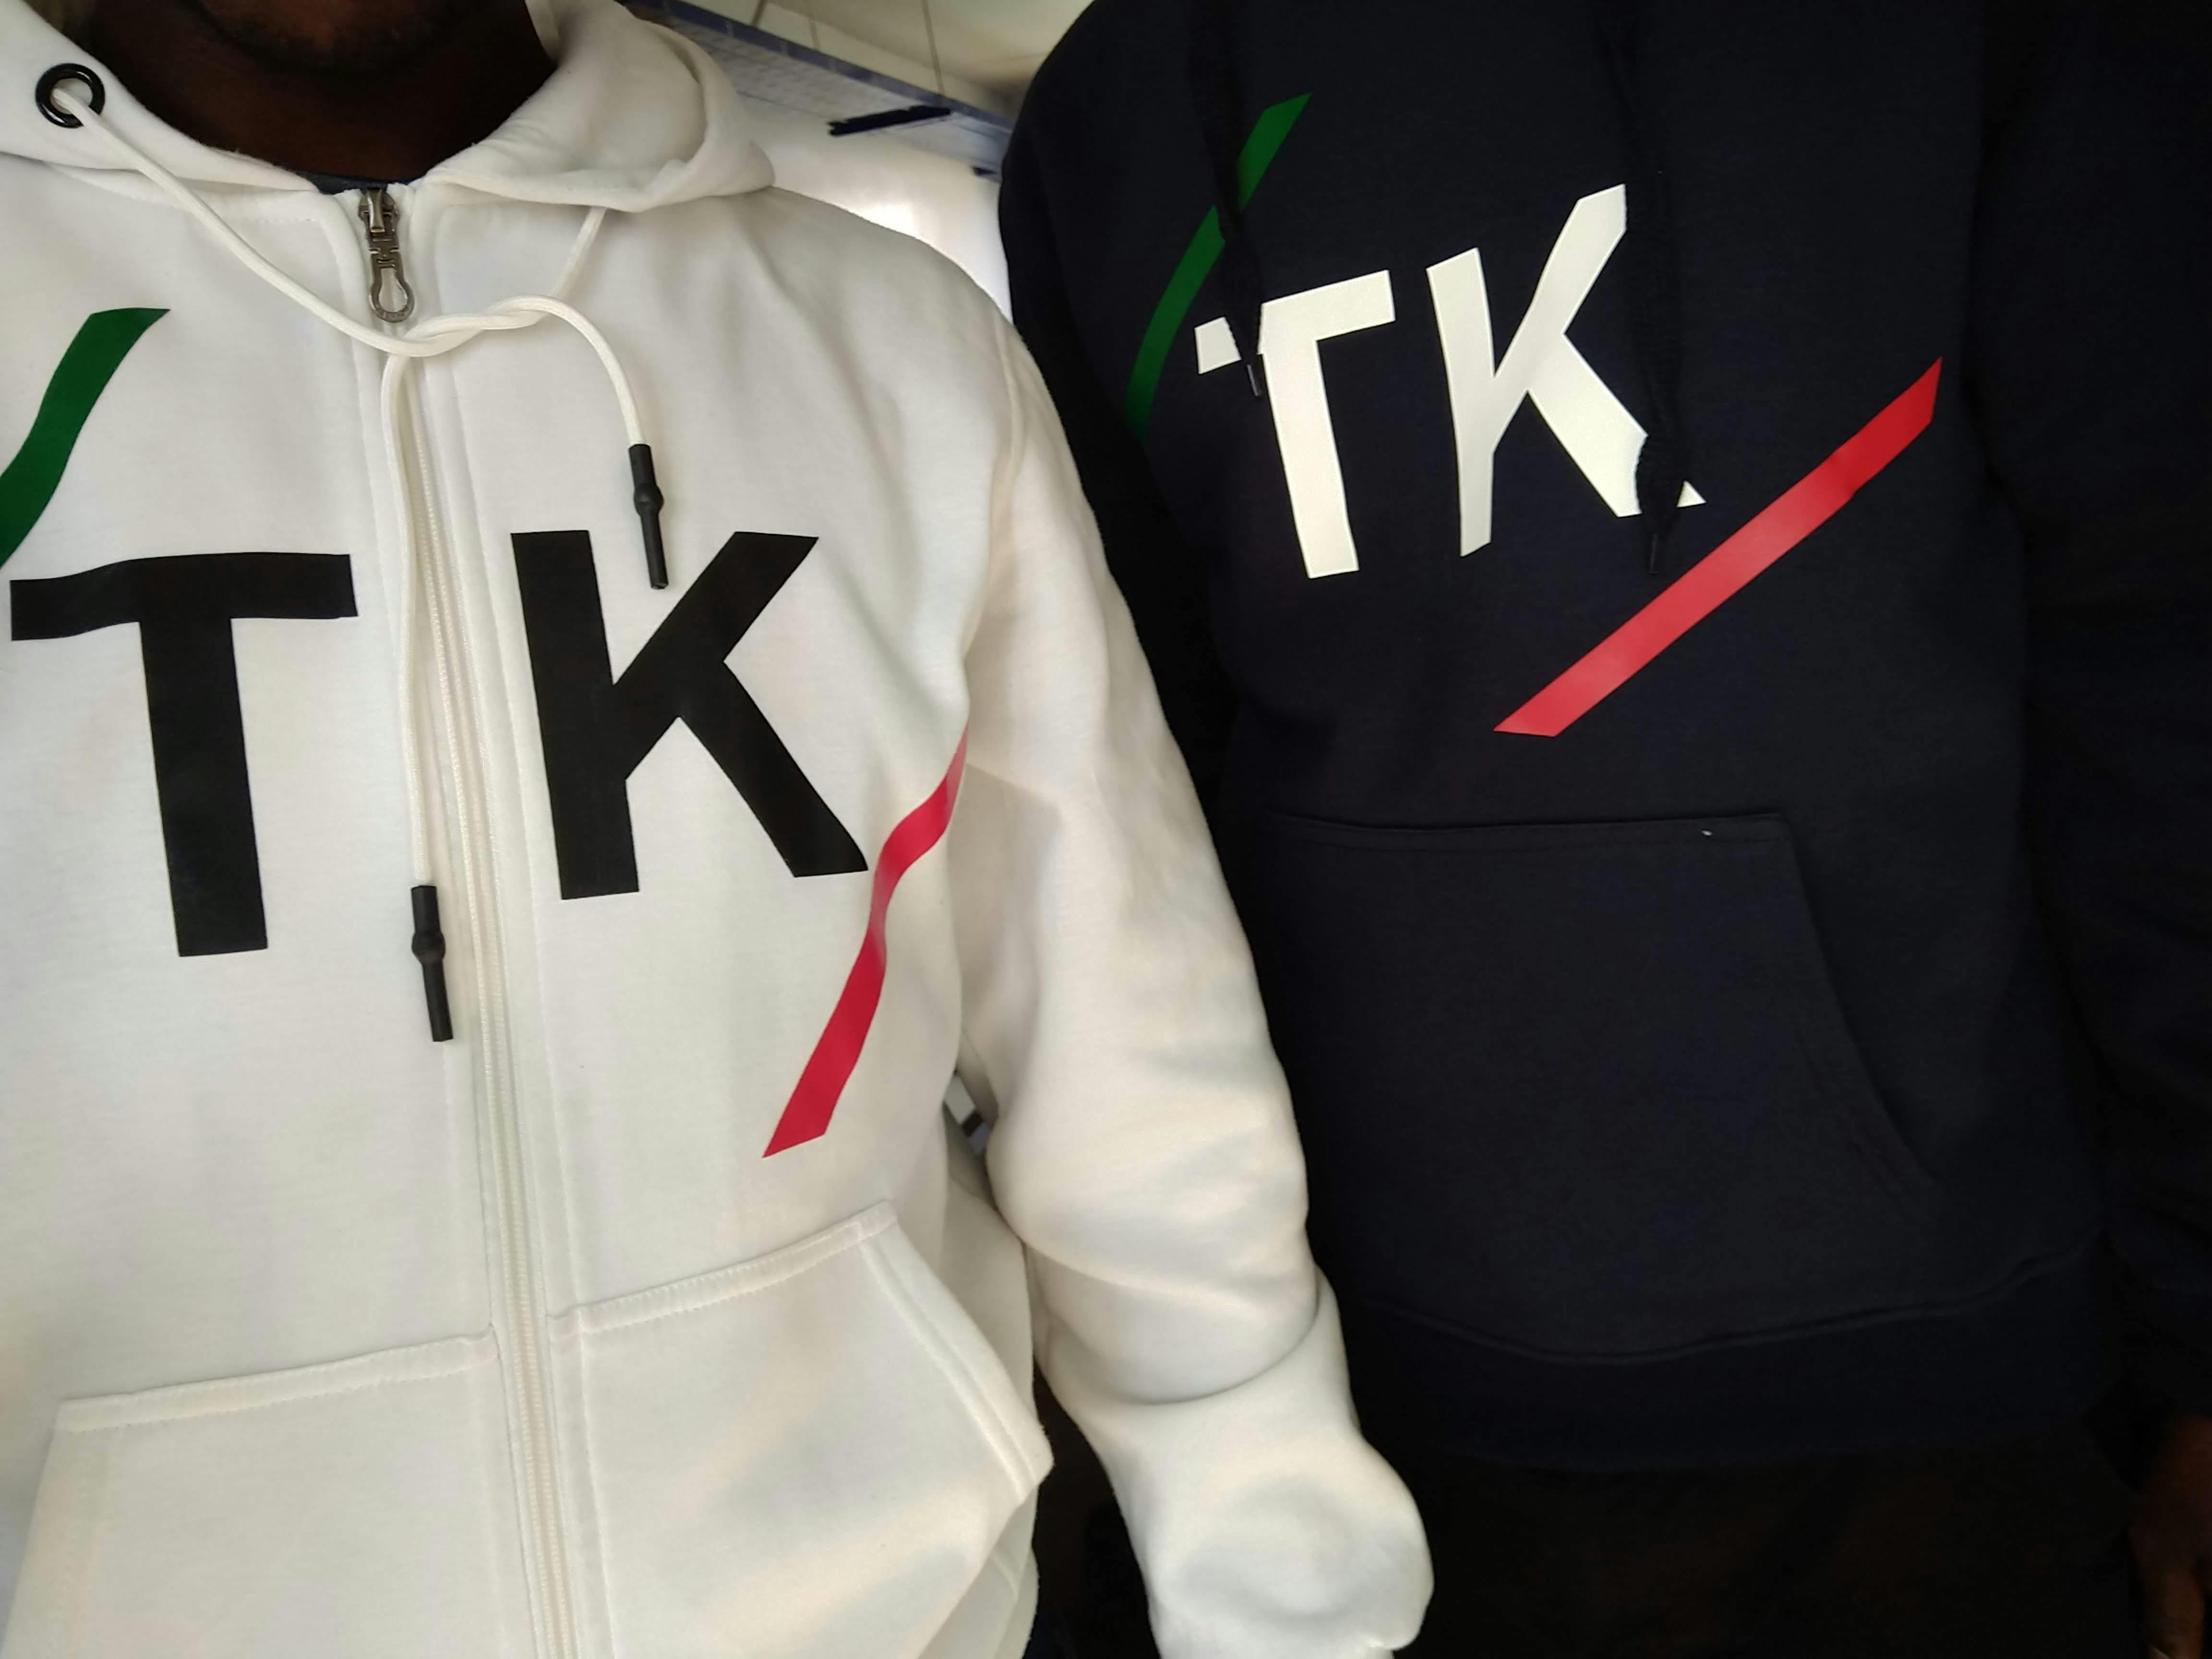 TK hoodies